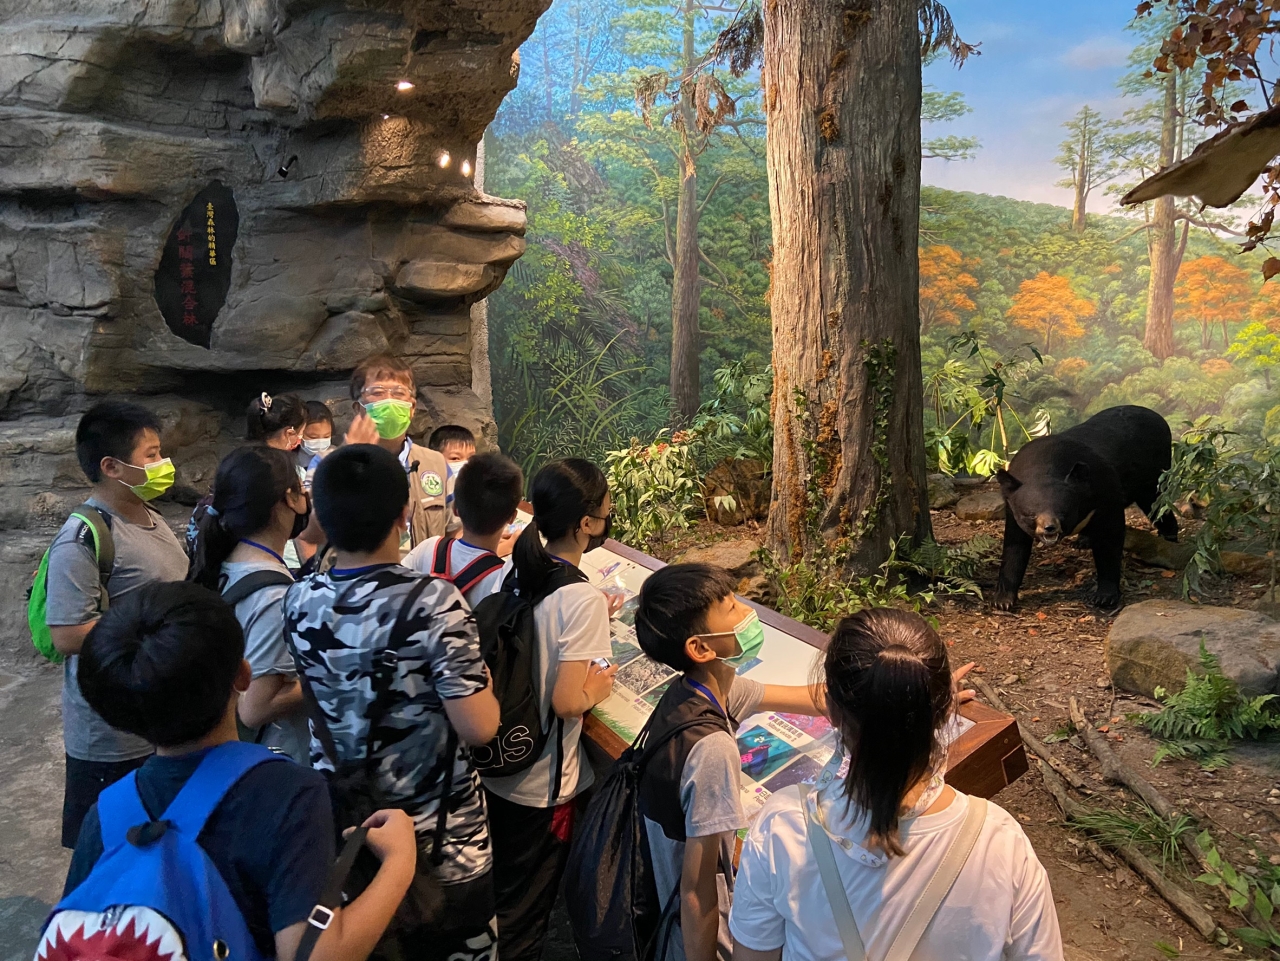 特生中心導覽員帶領學童認識台灣動物及棲地環境